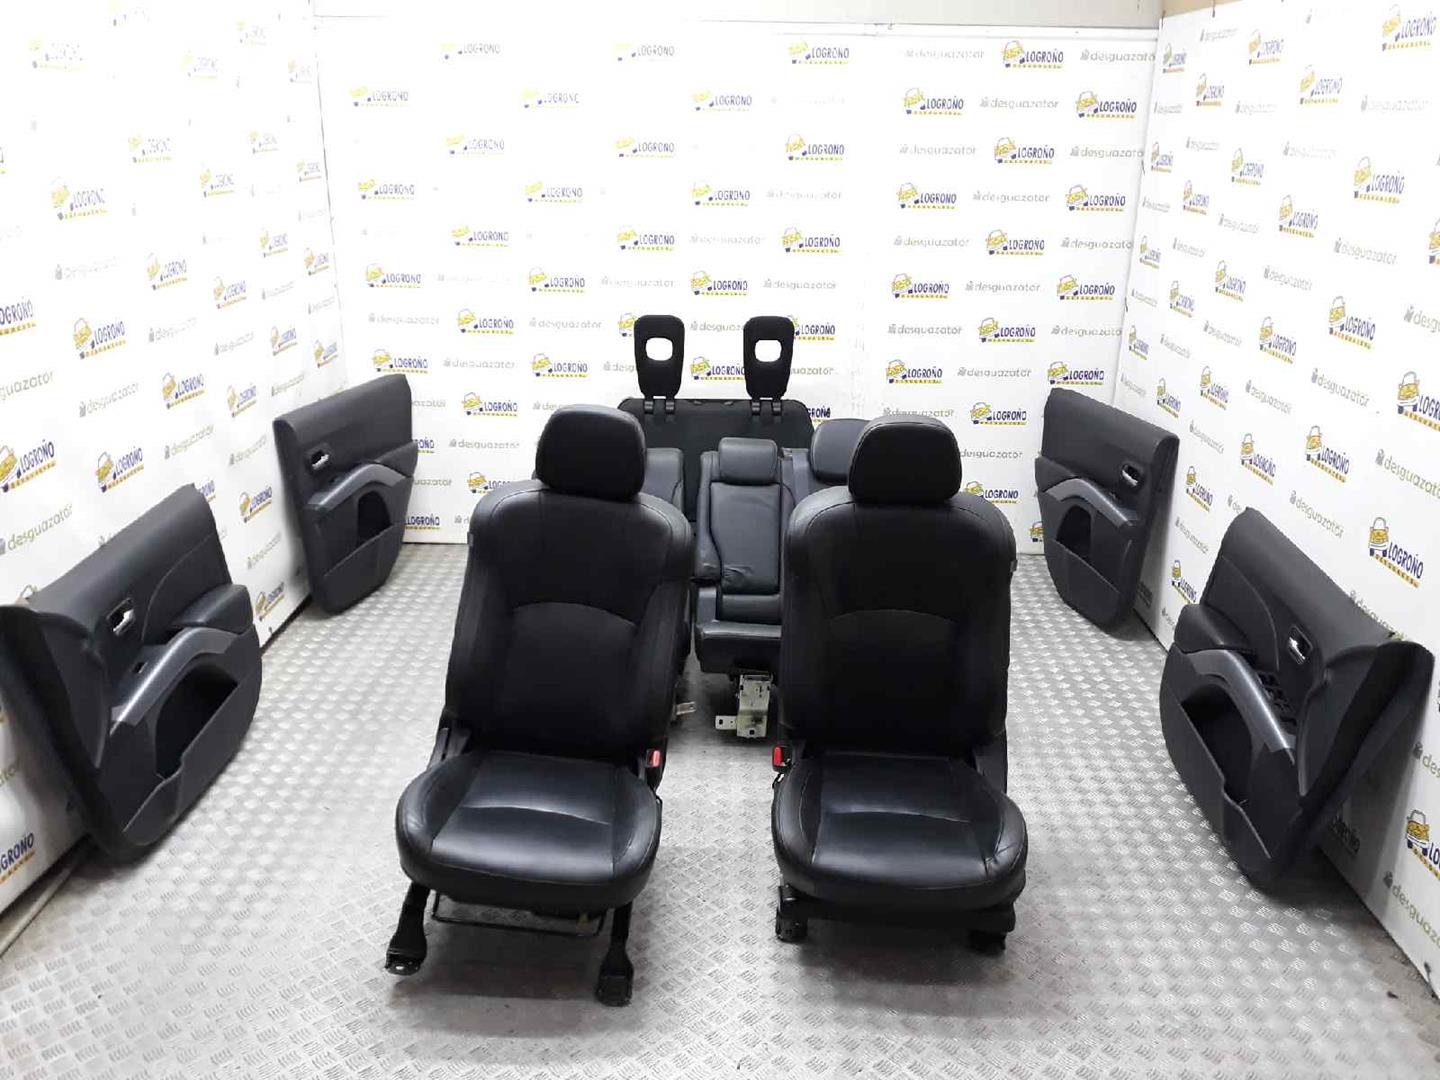 CITROËN C-Crosser 1 generation (2007-2013) Seats ASIENTOSDECUERO 19668491